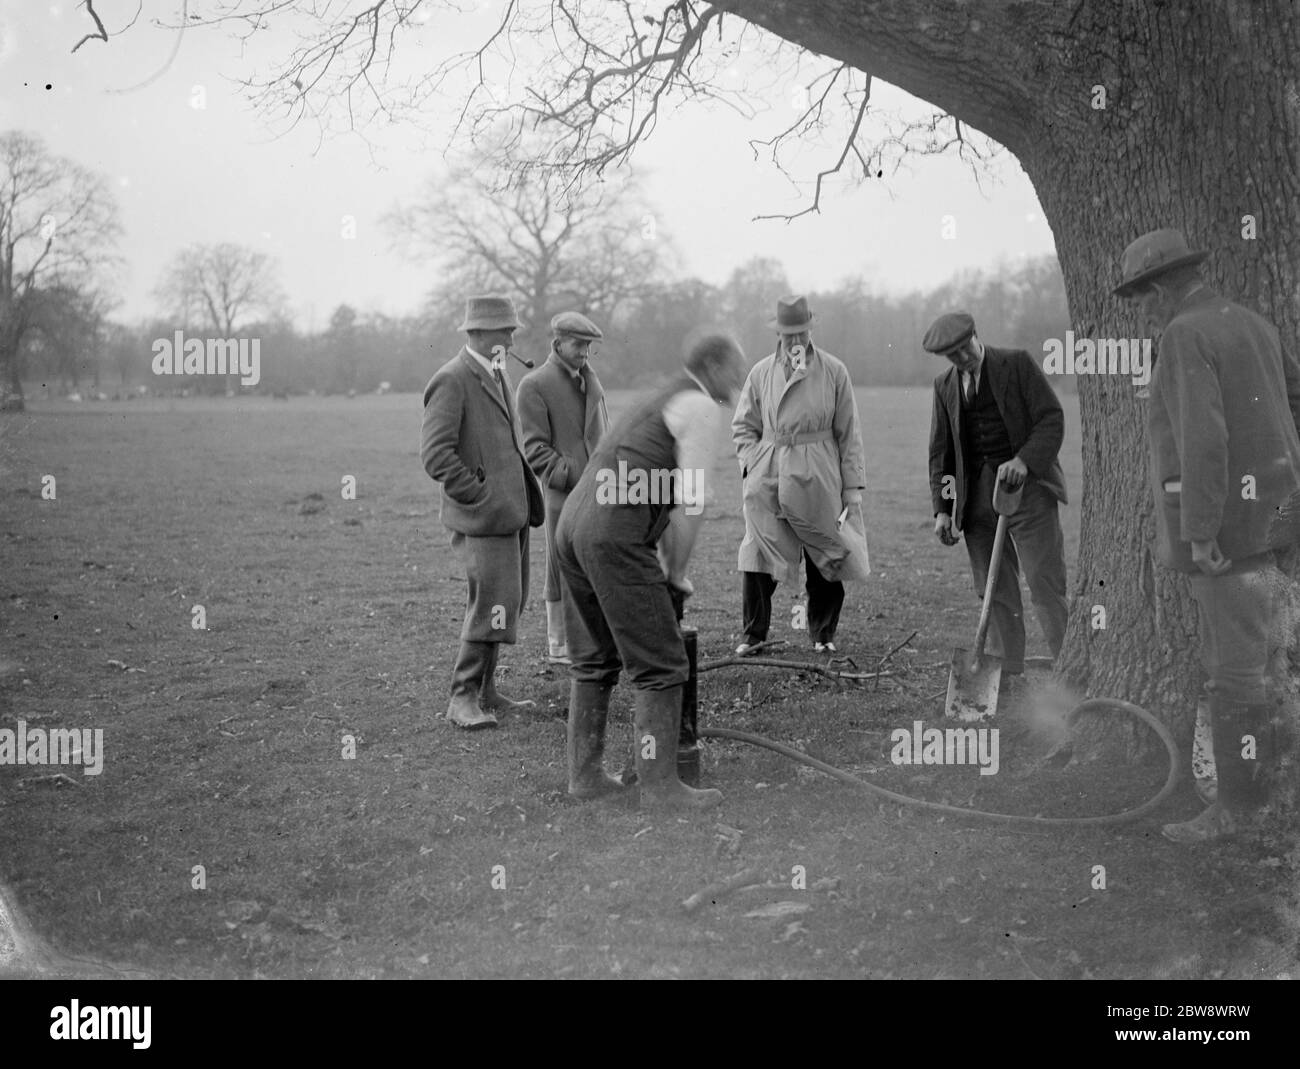 Un controllore di peste inietta Cyanogas nelle radici dell'albero per sbarazzarsi di vermin durante una dimostrazione agli agricoltori . 1936 Foto Stock